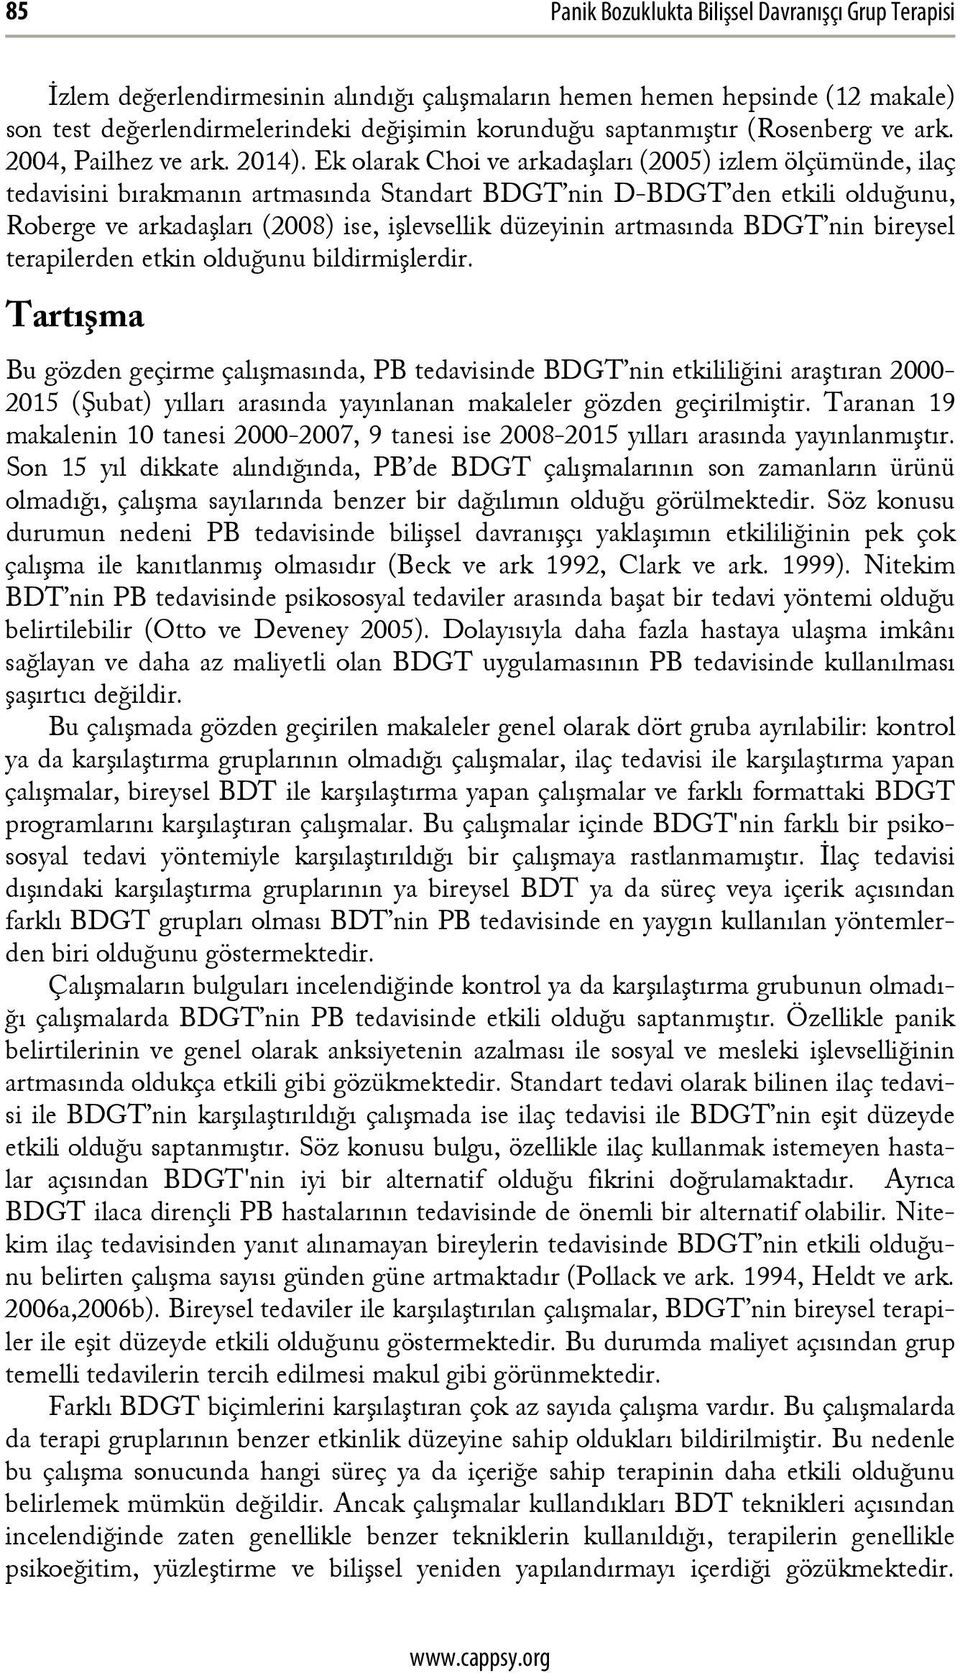 Ek olarak Choi ve arkadaşları (2005) izlem ölçümünde, ilaç tedavisini bırakmanın artmasında Standart BDGT nin D-BDGT den etkili olduğunu, Roberge ve arkadaşları (2008) ise, işlevsellik düzeyinin